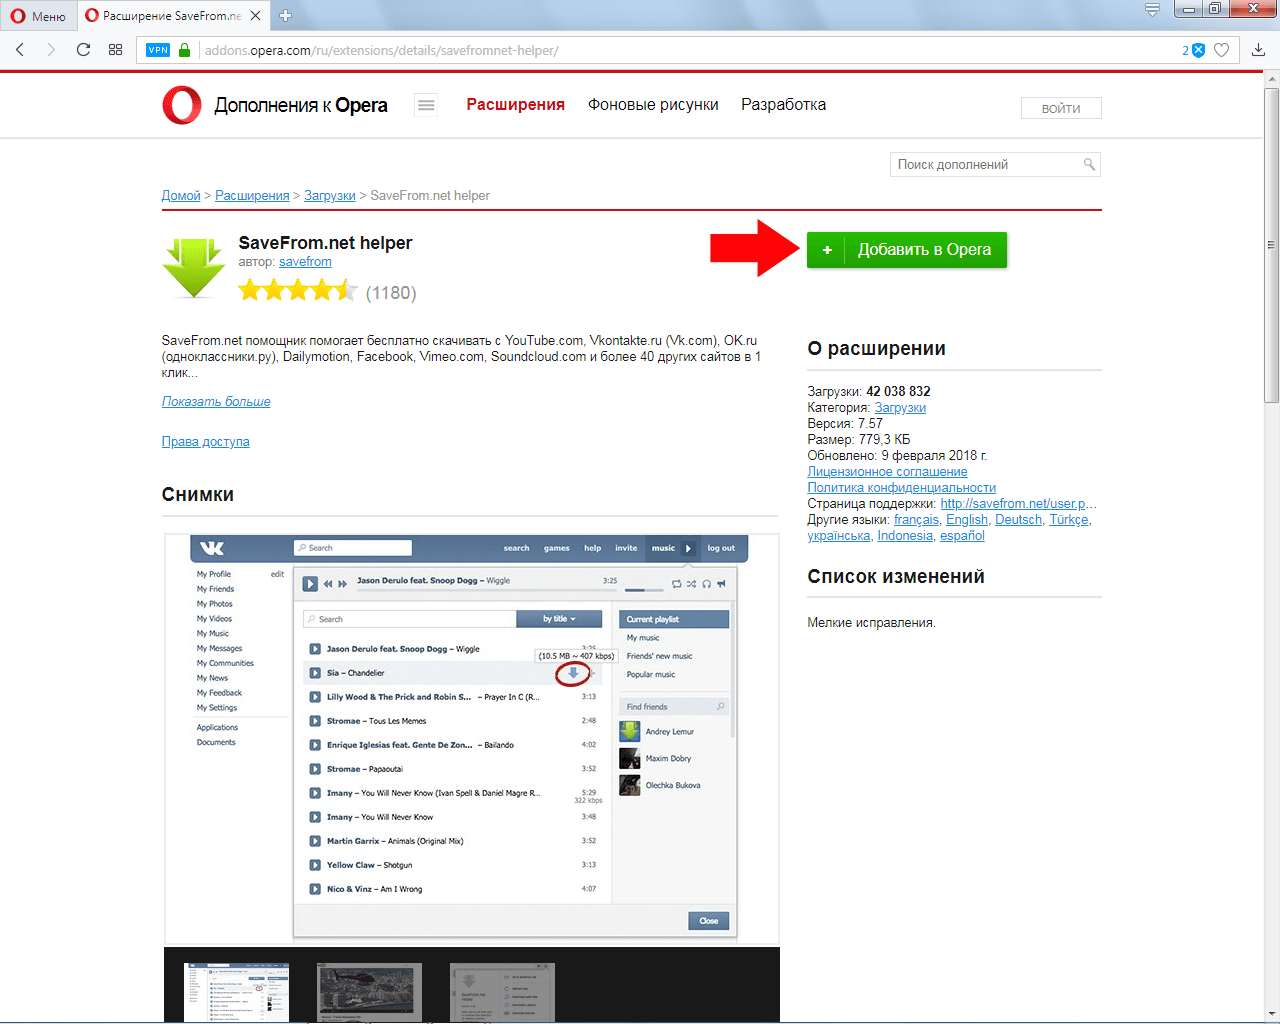 Программа для скачивания музыки из социальной сети Вконтакте через браузер Опера